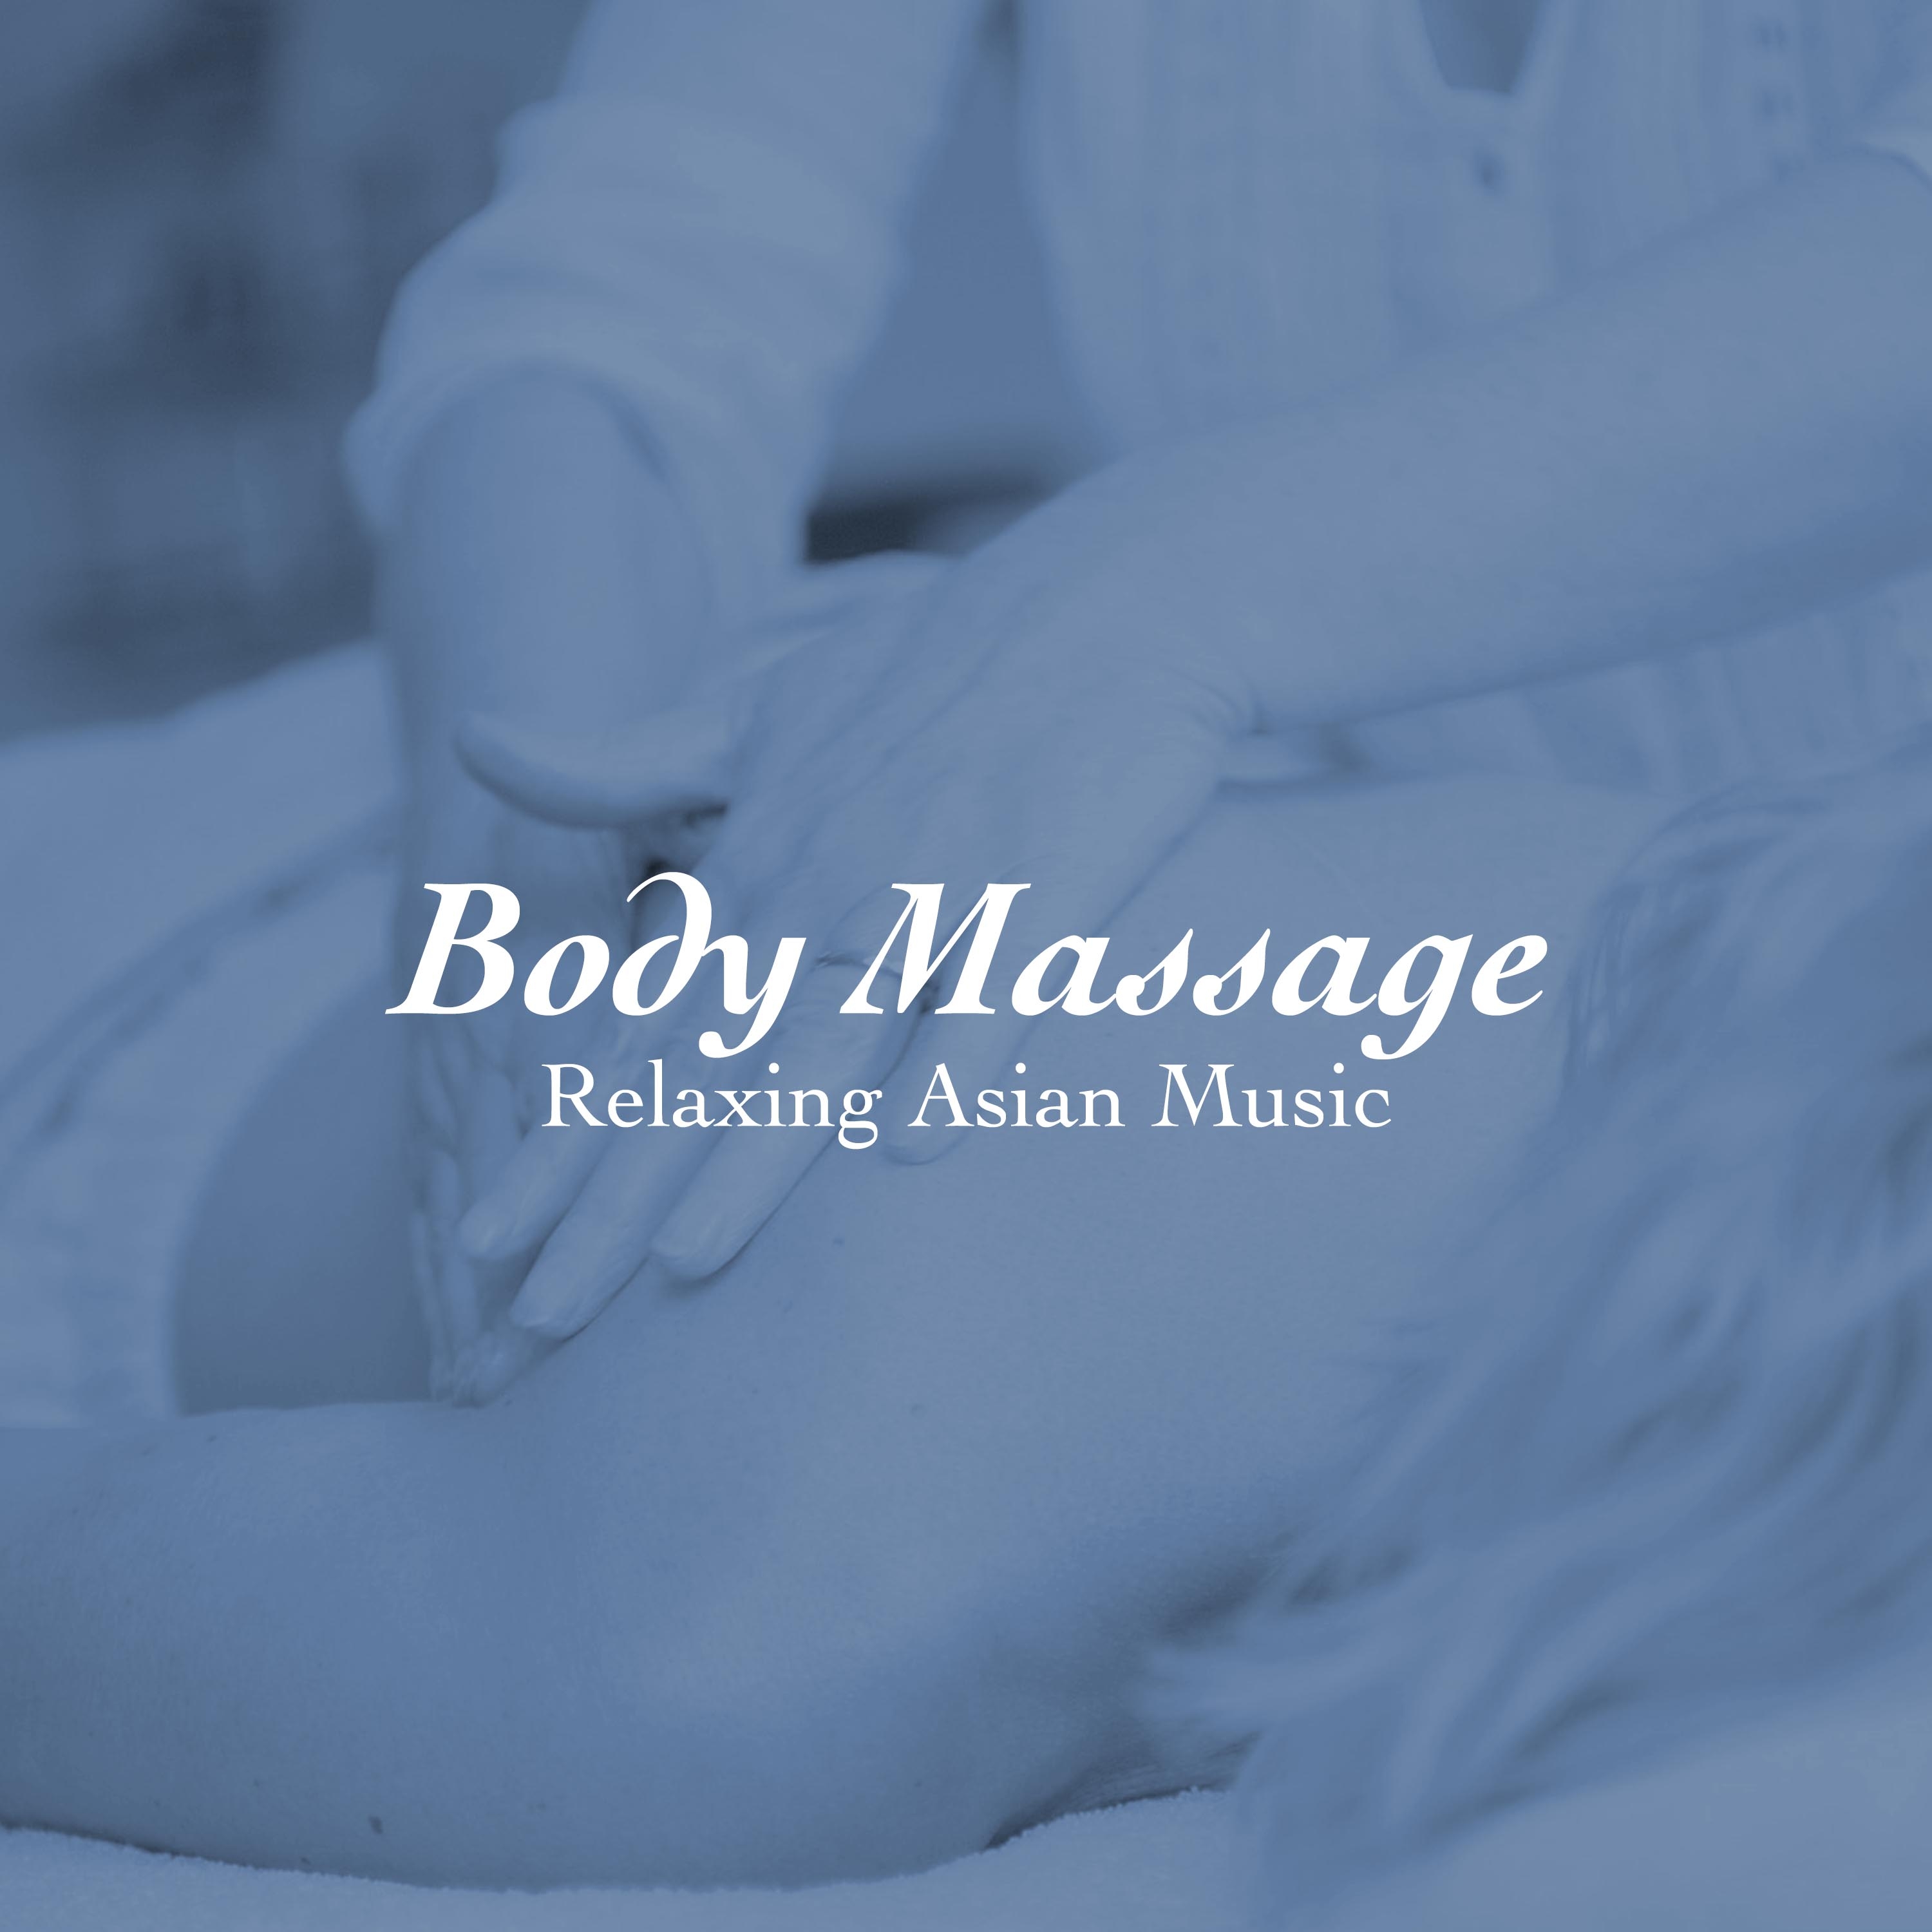 Body Massage - Relaxing Asian Music for Spa Days, Sports Massage, Prenatal Massage, Swedish Massage, Trigger Point Massage, Hot Stone Massage, Shiatsu Massage